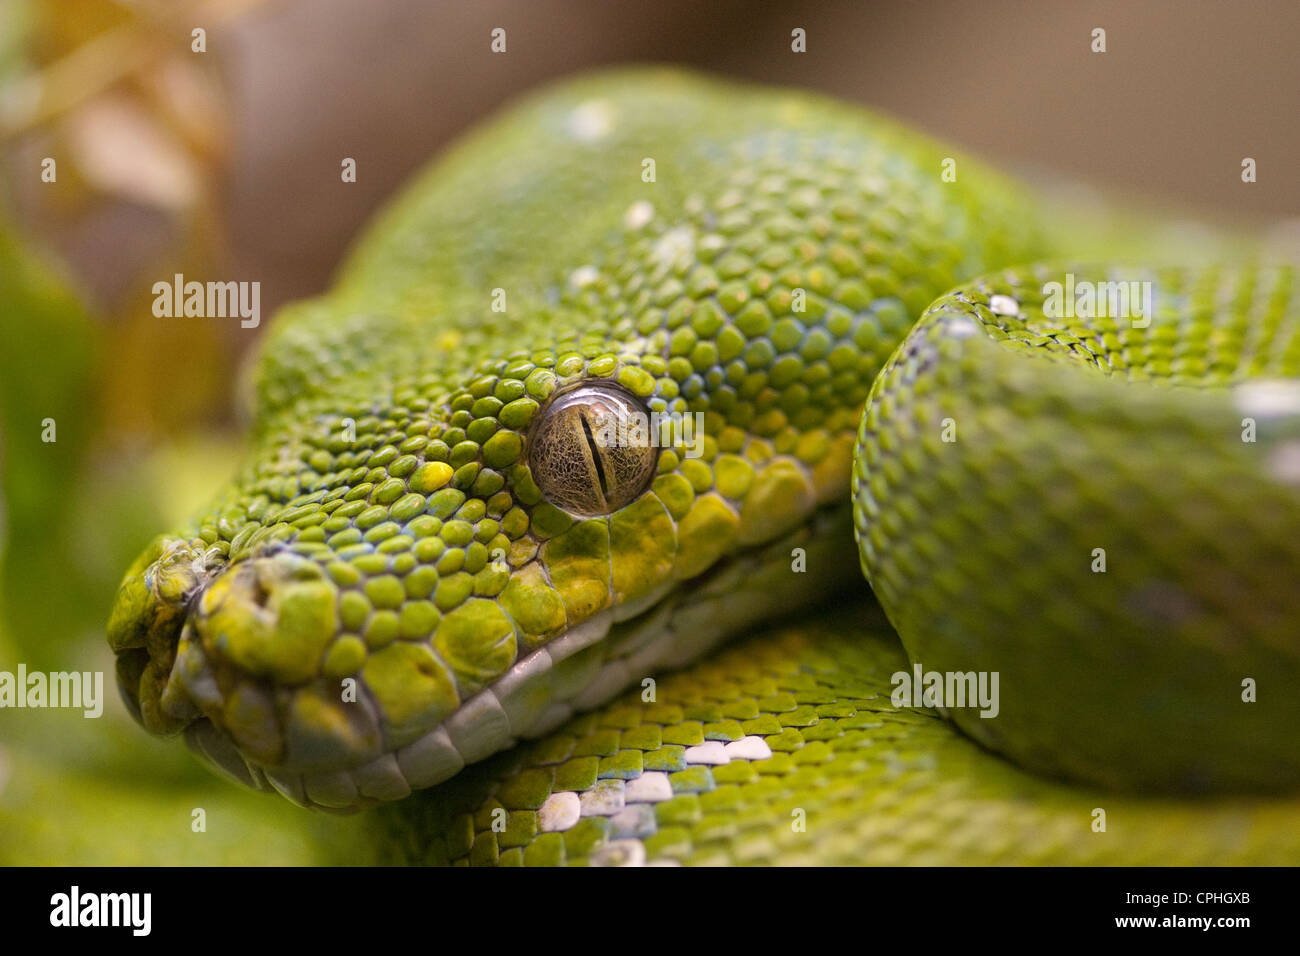 Reptiles serpientes Foto de stock